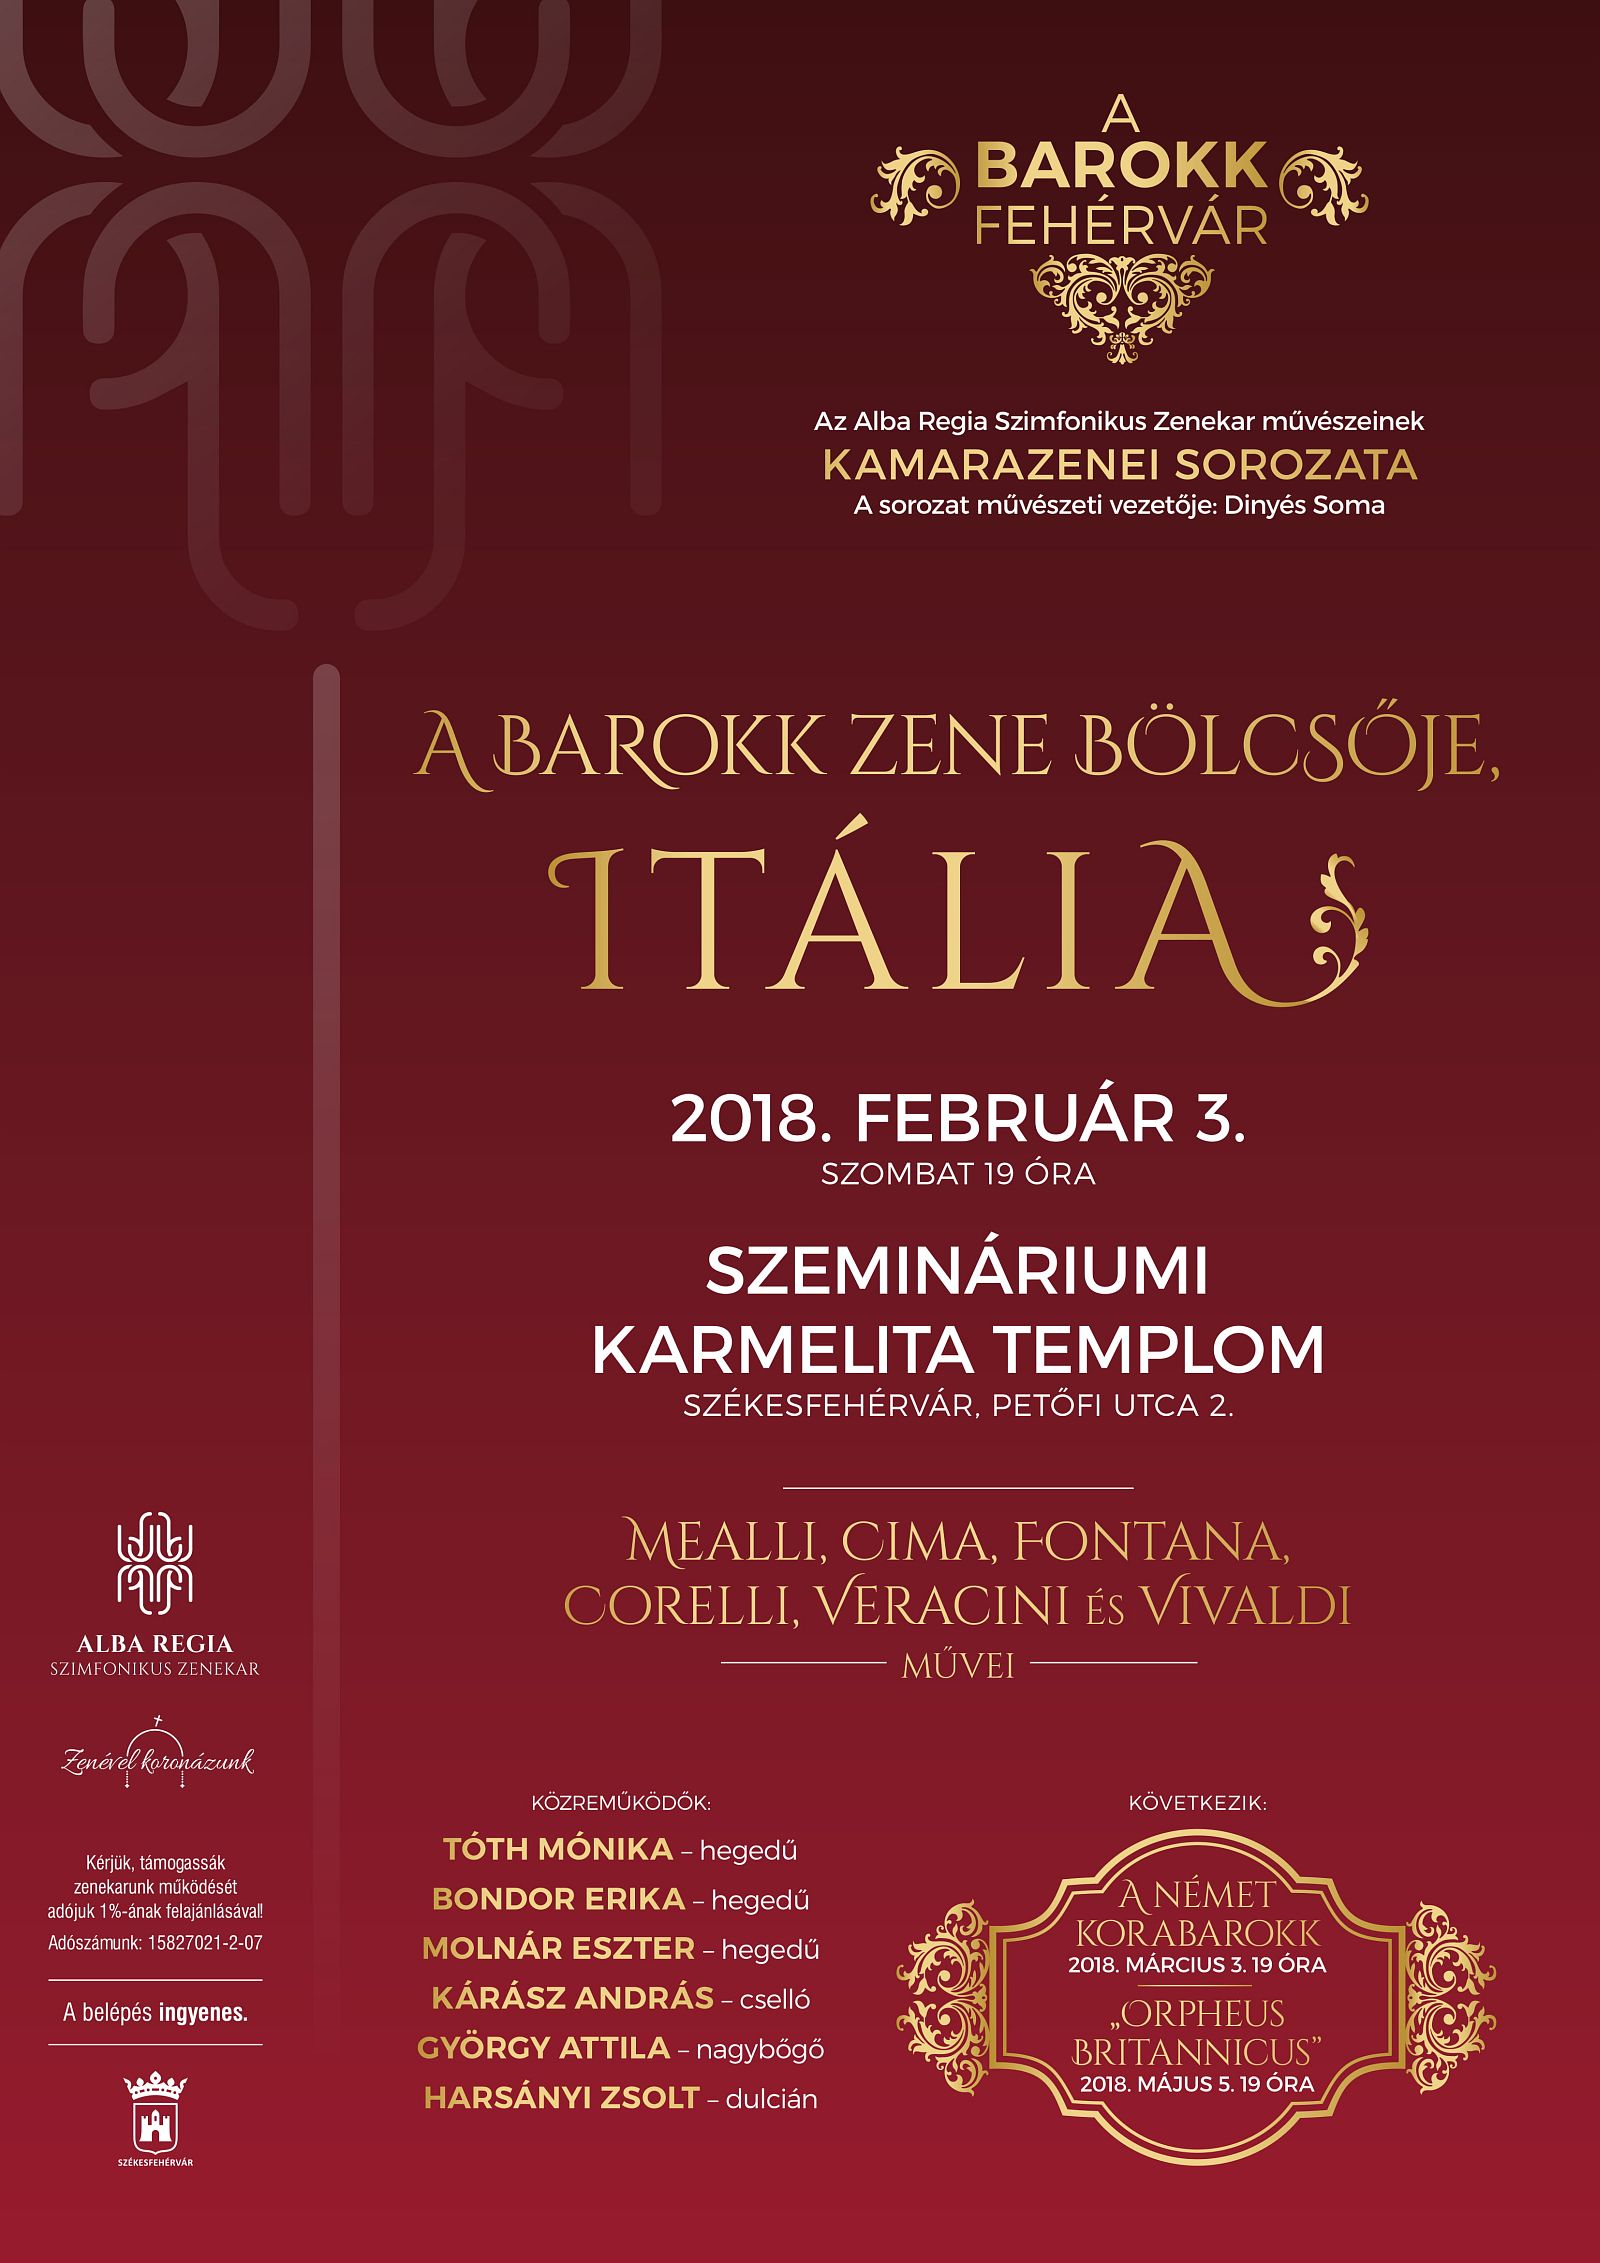 Ingyenes barokk koncertsorozatot indít az Alba Regia Szimfonikus Zenekar